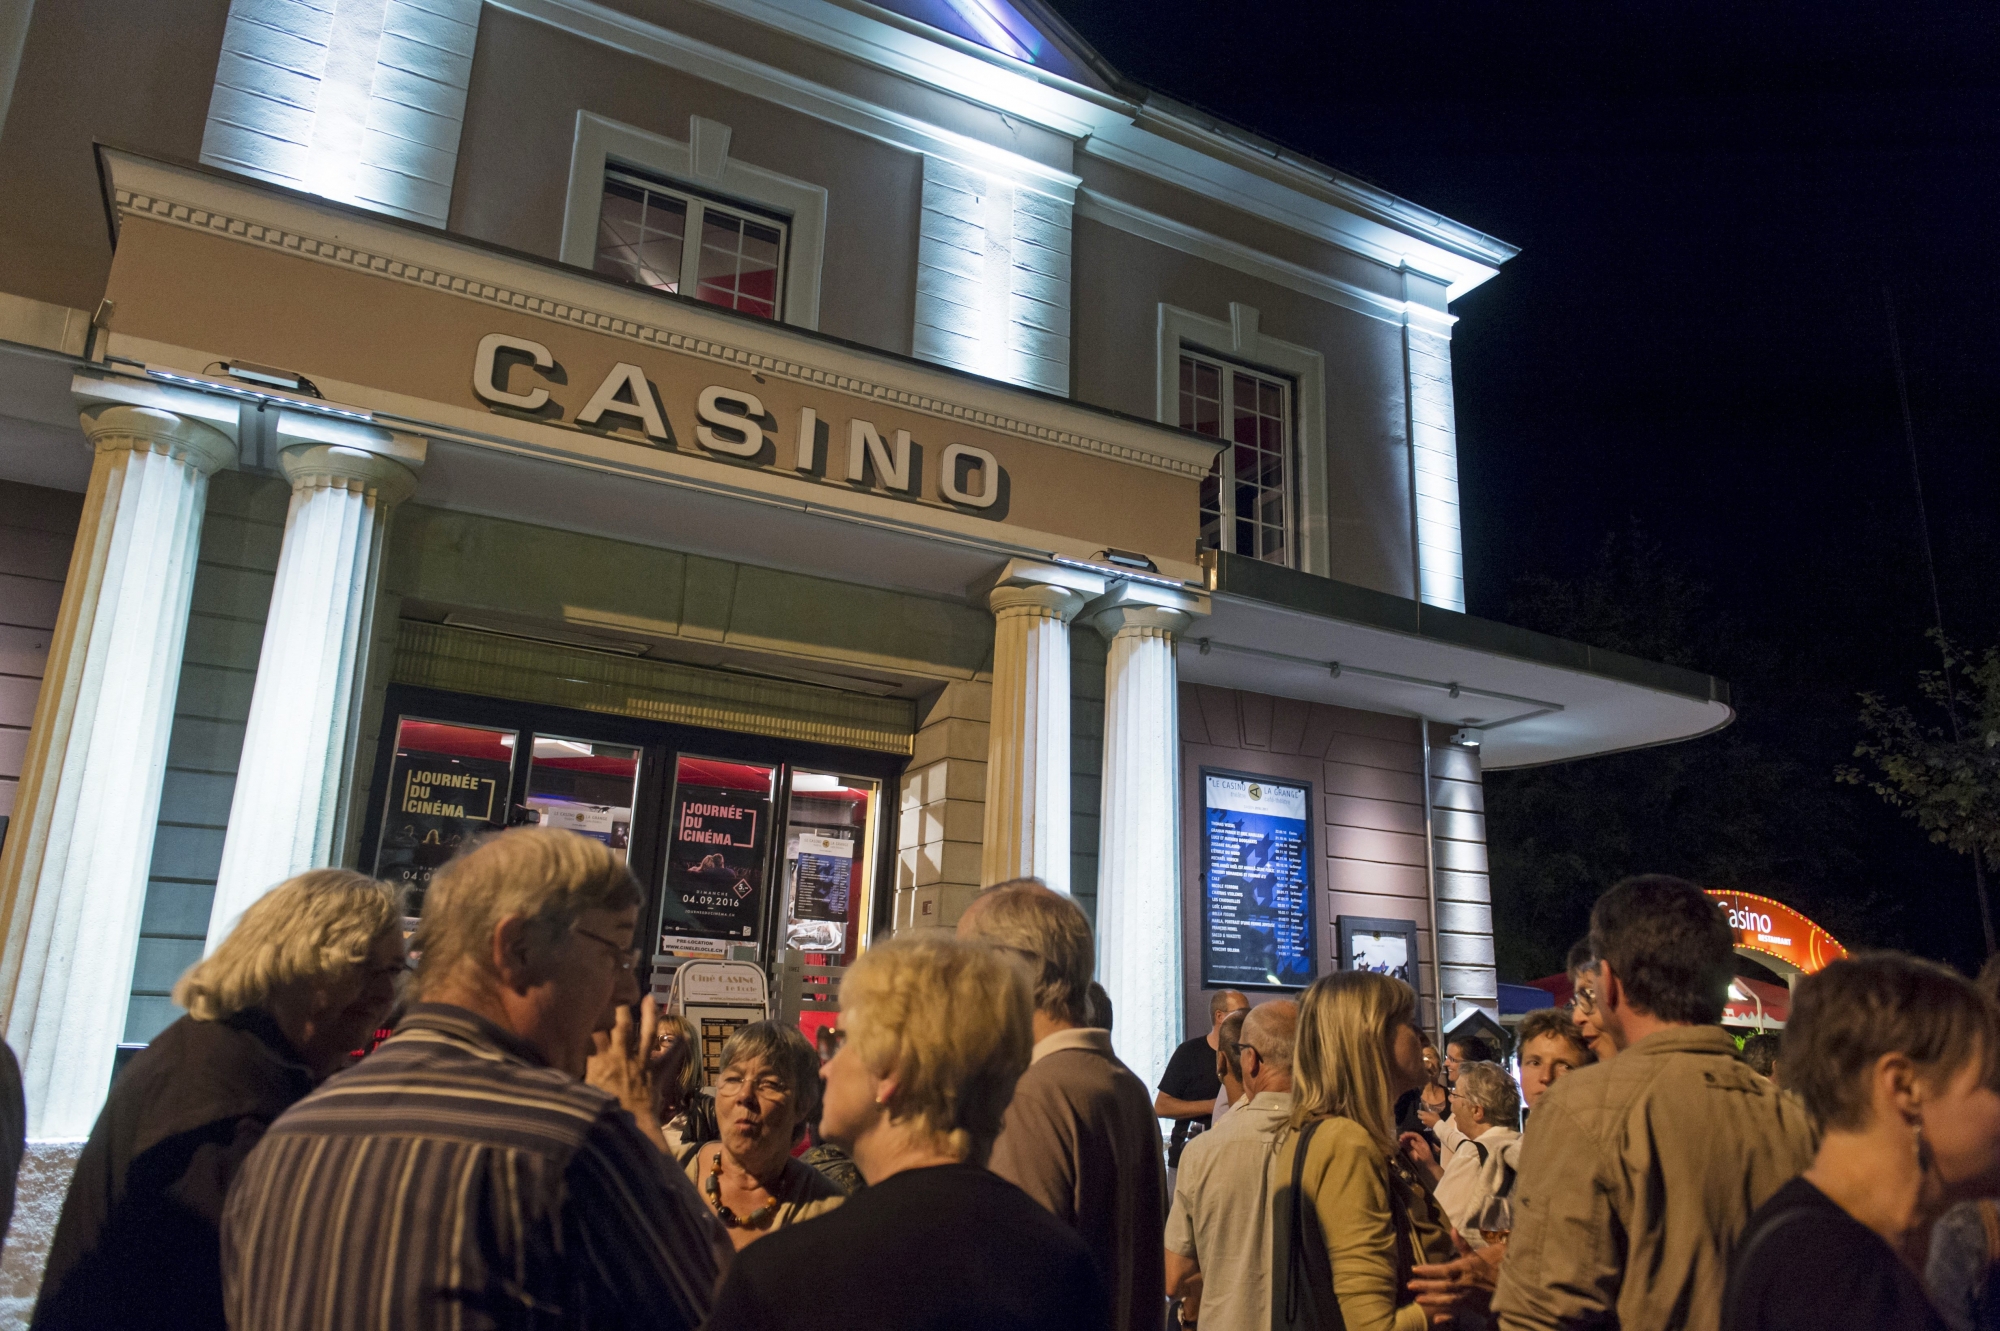 Ce week-end, le Casino du Locle accueillera la Fête du cinéma pour la 6e fois.